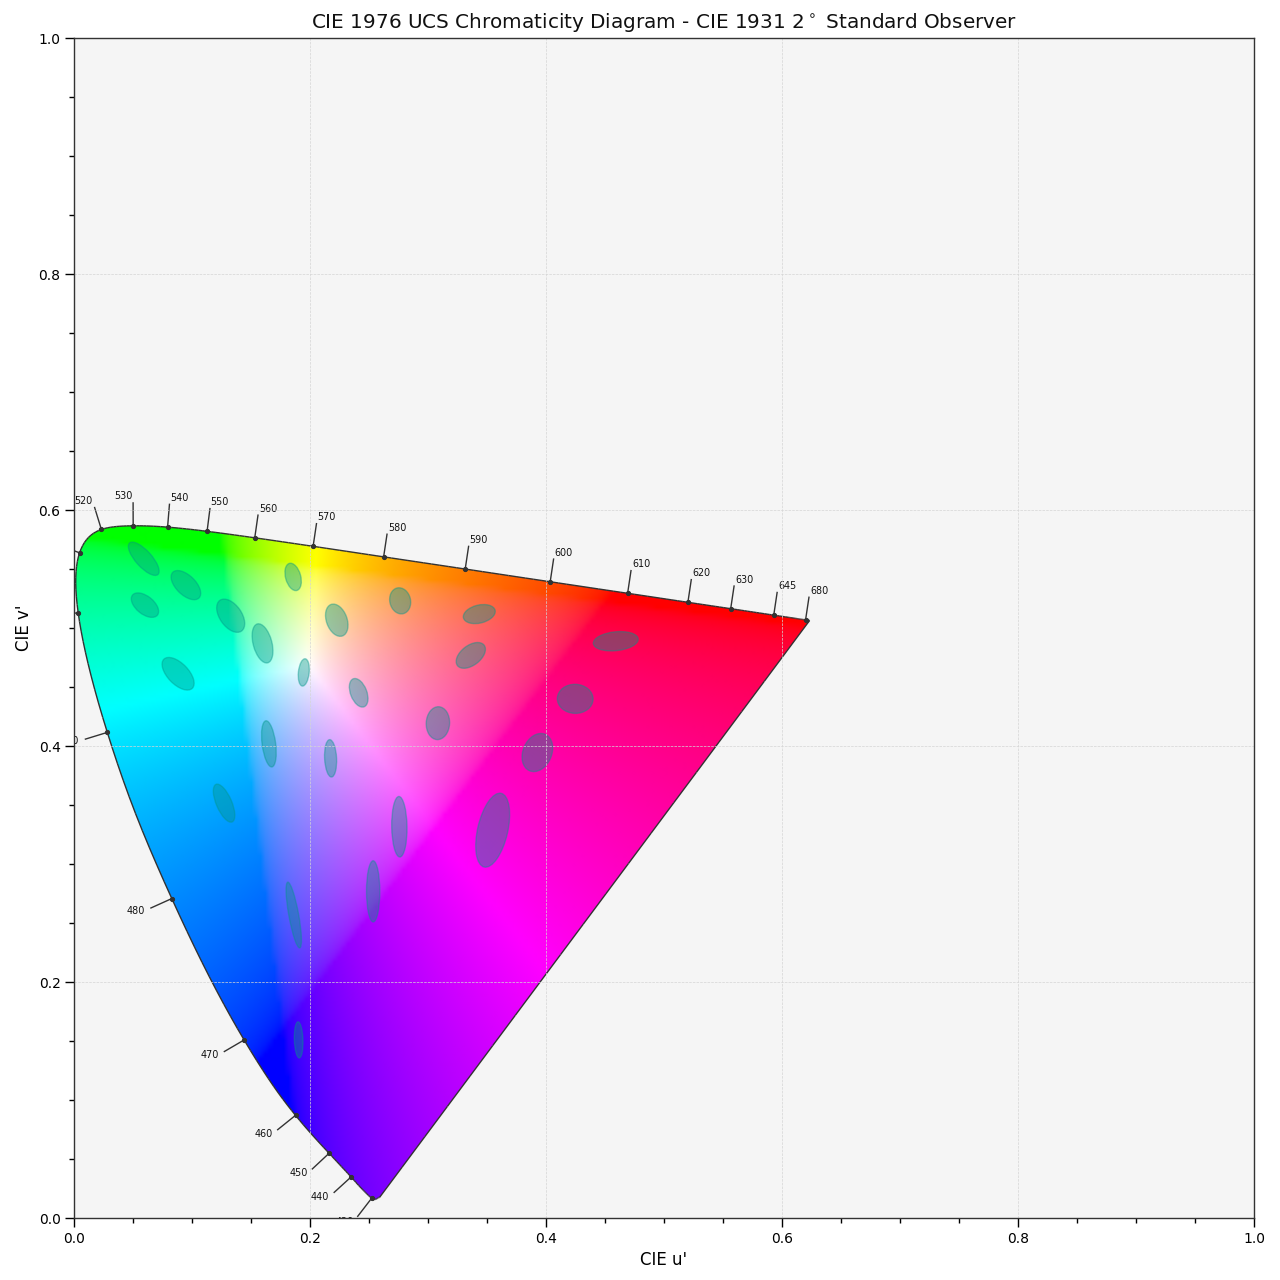 plot_ellipses_MacAdam1942_in_chromaticity_diagram_CIE1976UCS